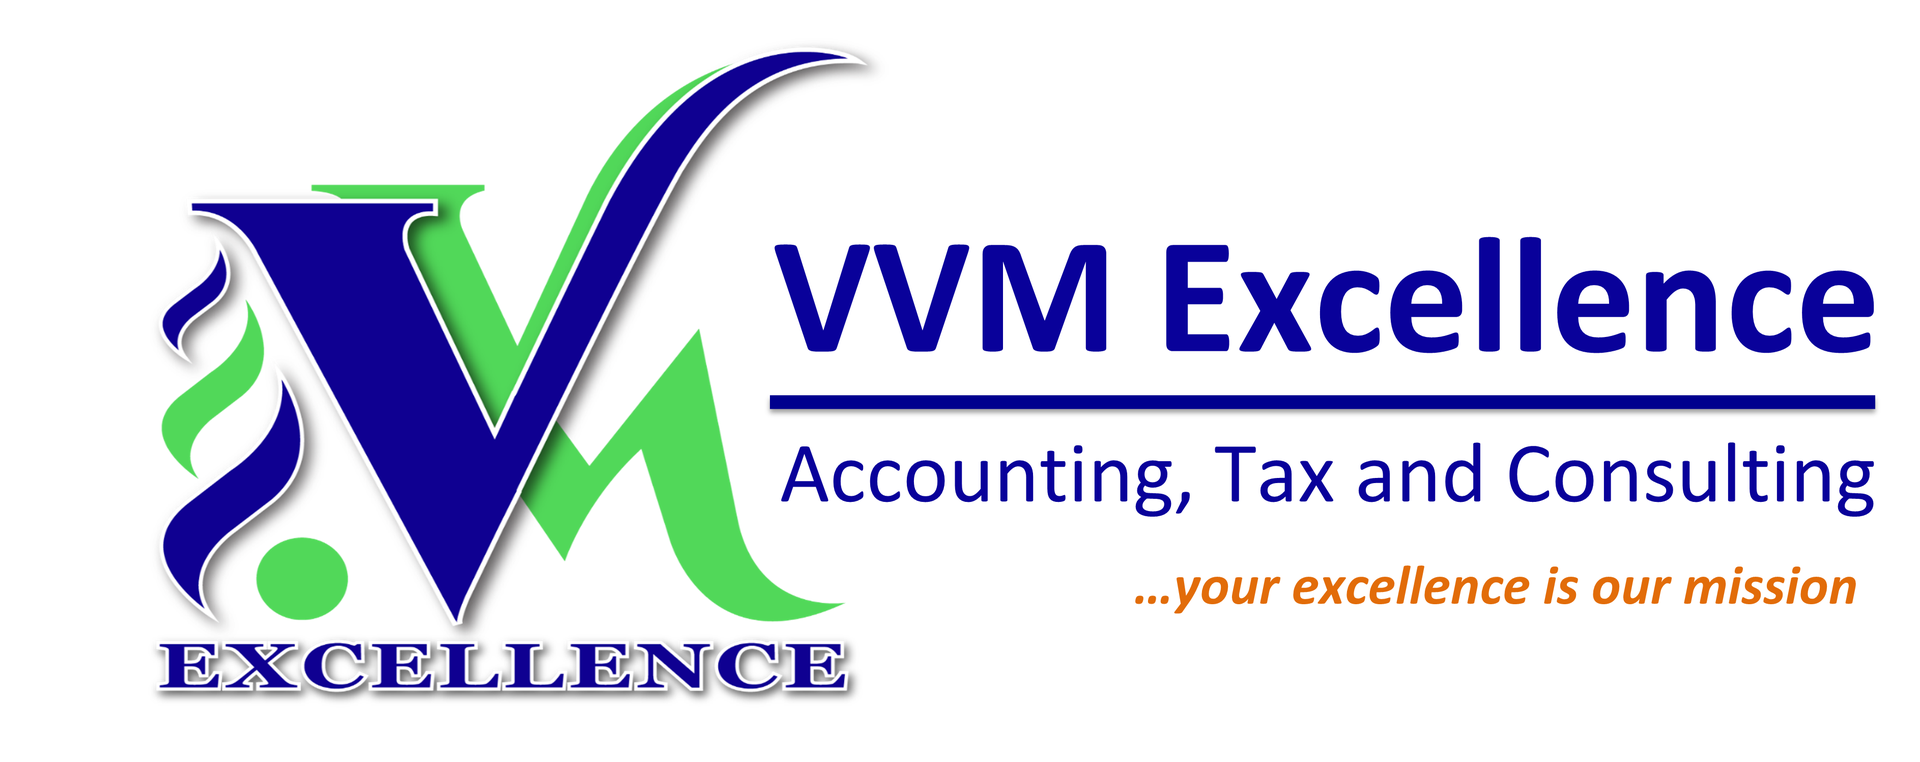 VVM Excellence N.V.